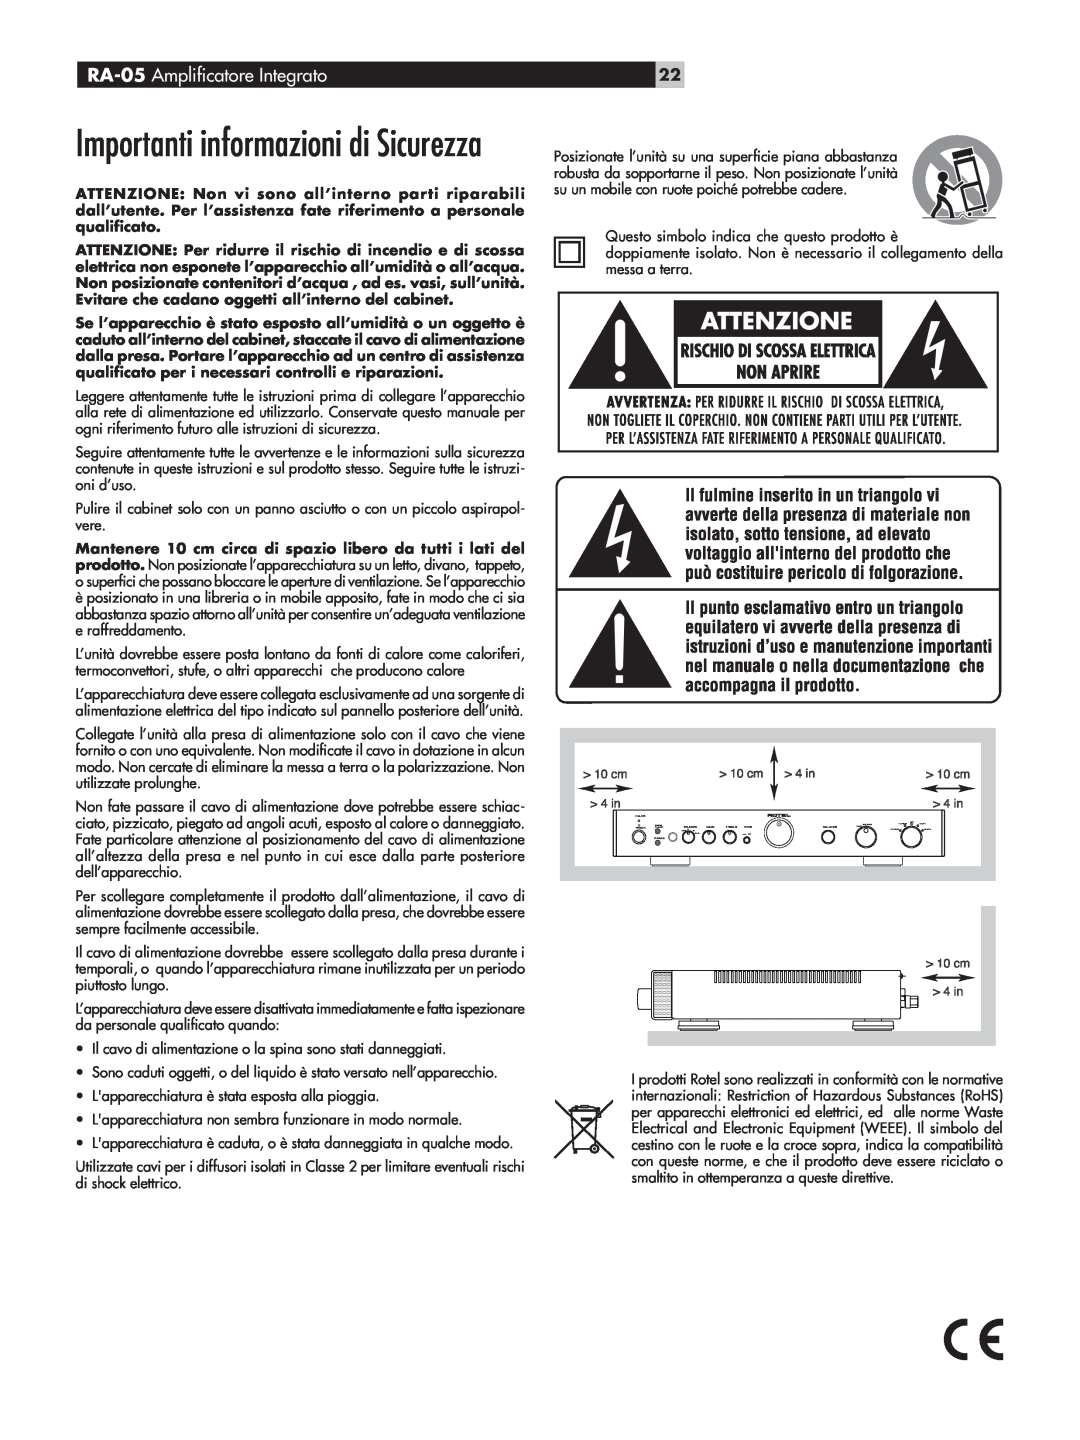 Rotel owner manual Importanti informazioni di Sicurezza, RA-05 Amplificatore Integrato 